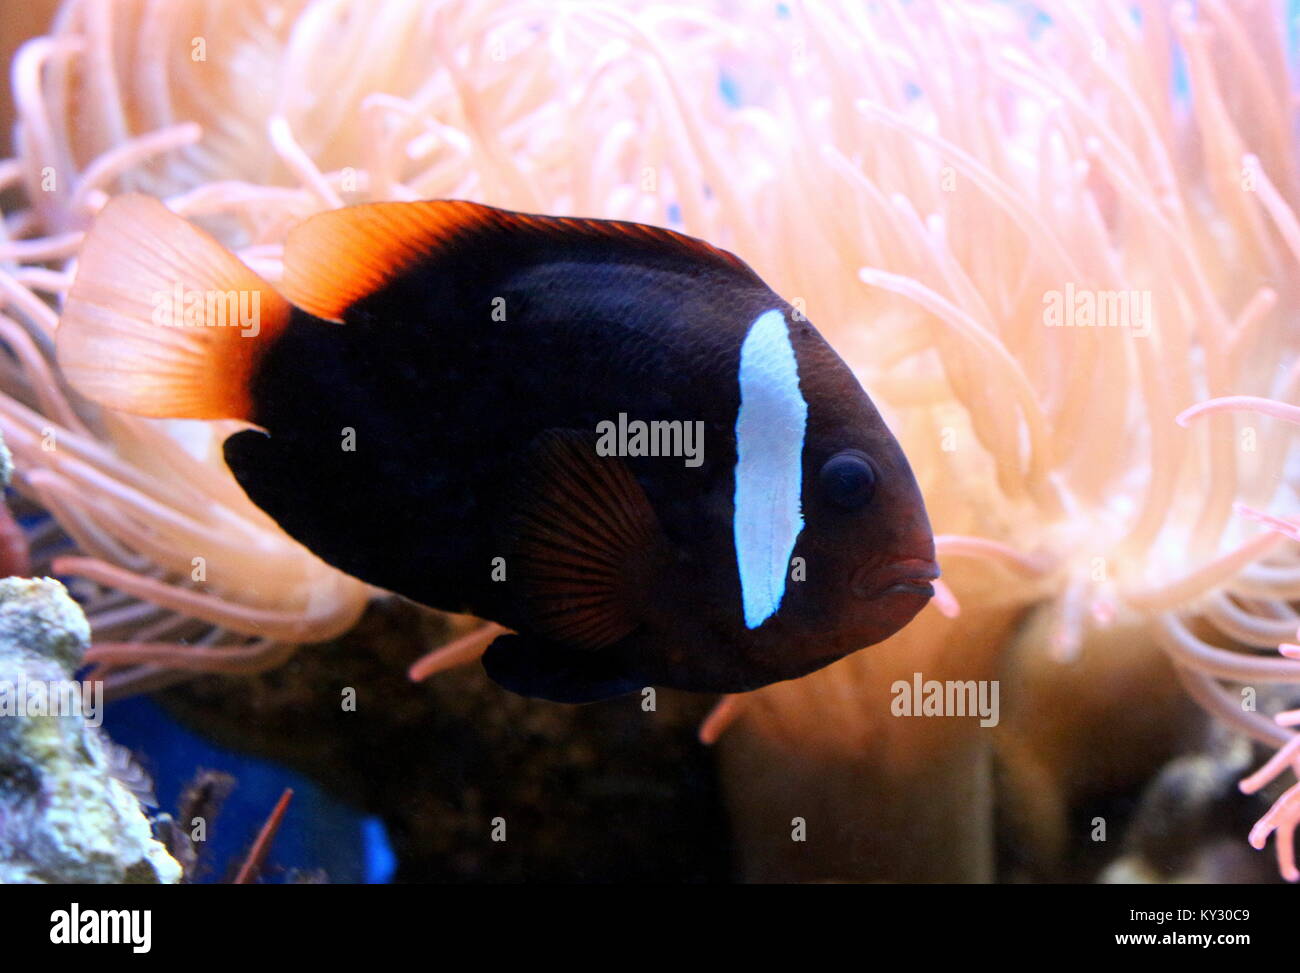 Pacific canela o fuego pez payaso (Amphiprion melanopus), también conocido como el rojo y el negro anemonefish. Foto de stock